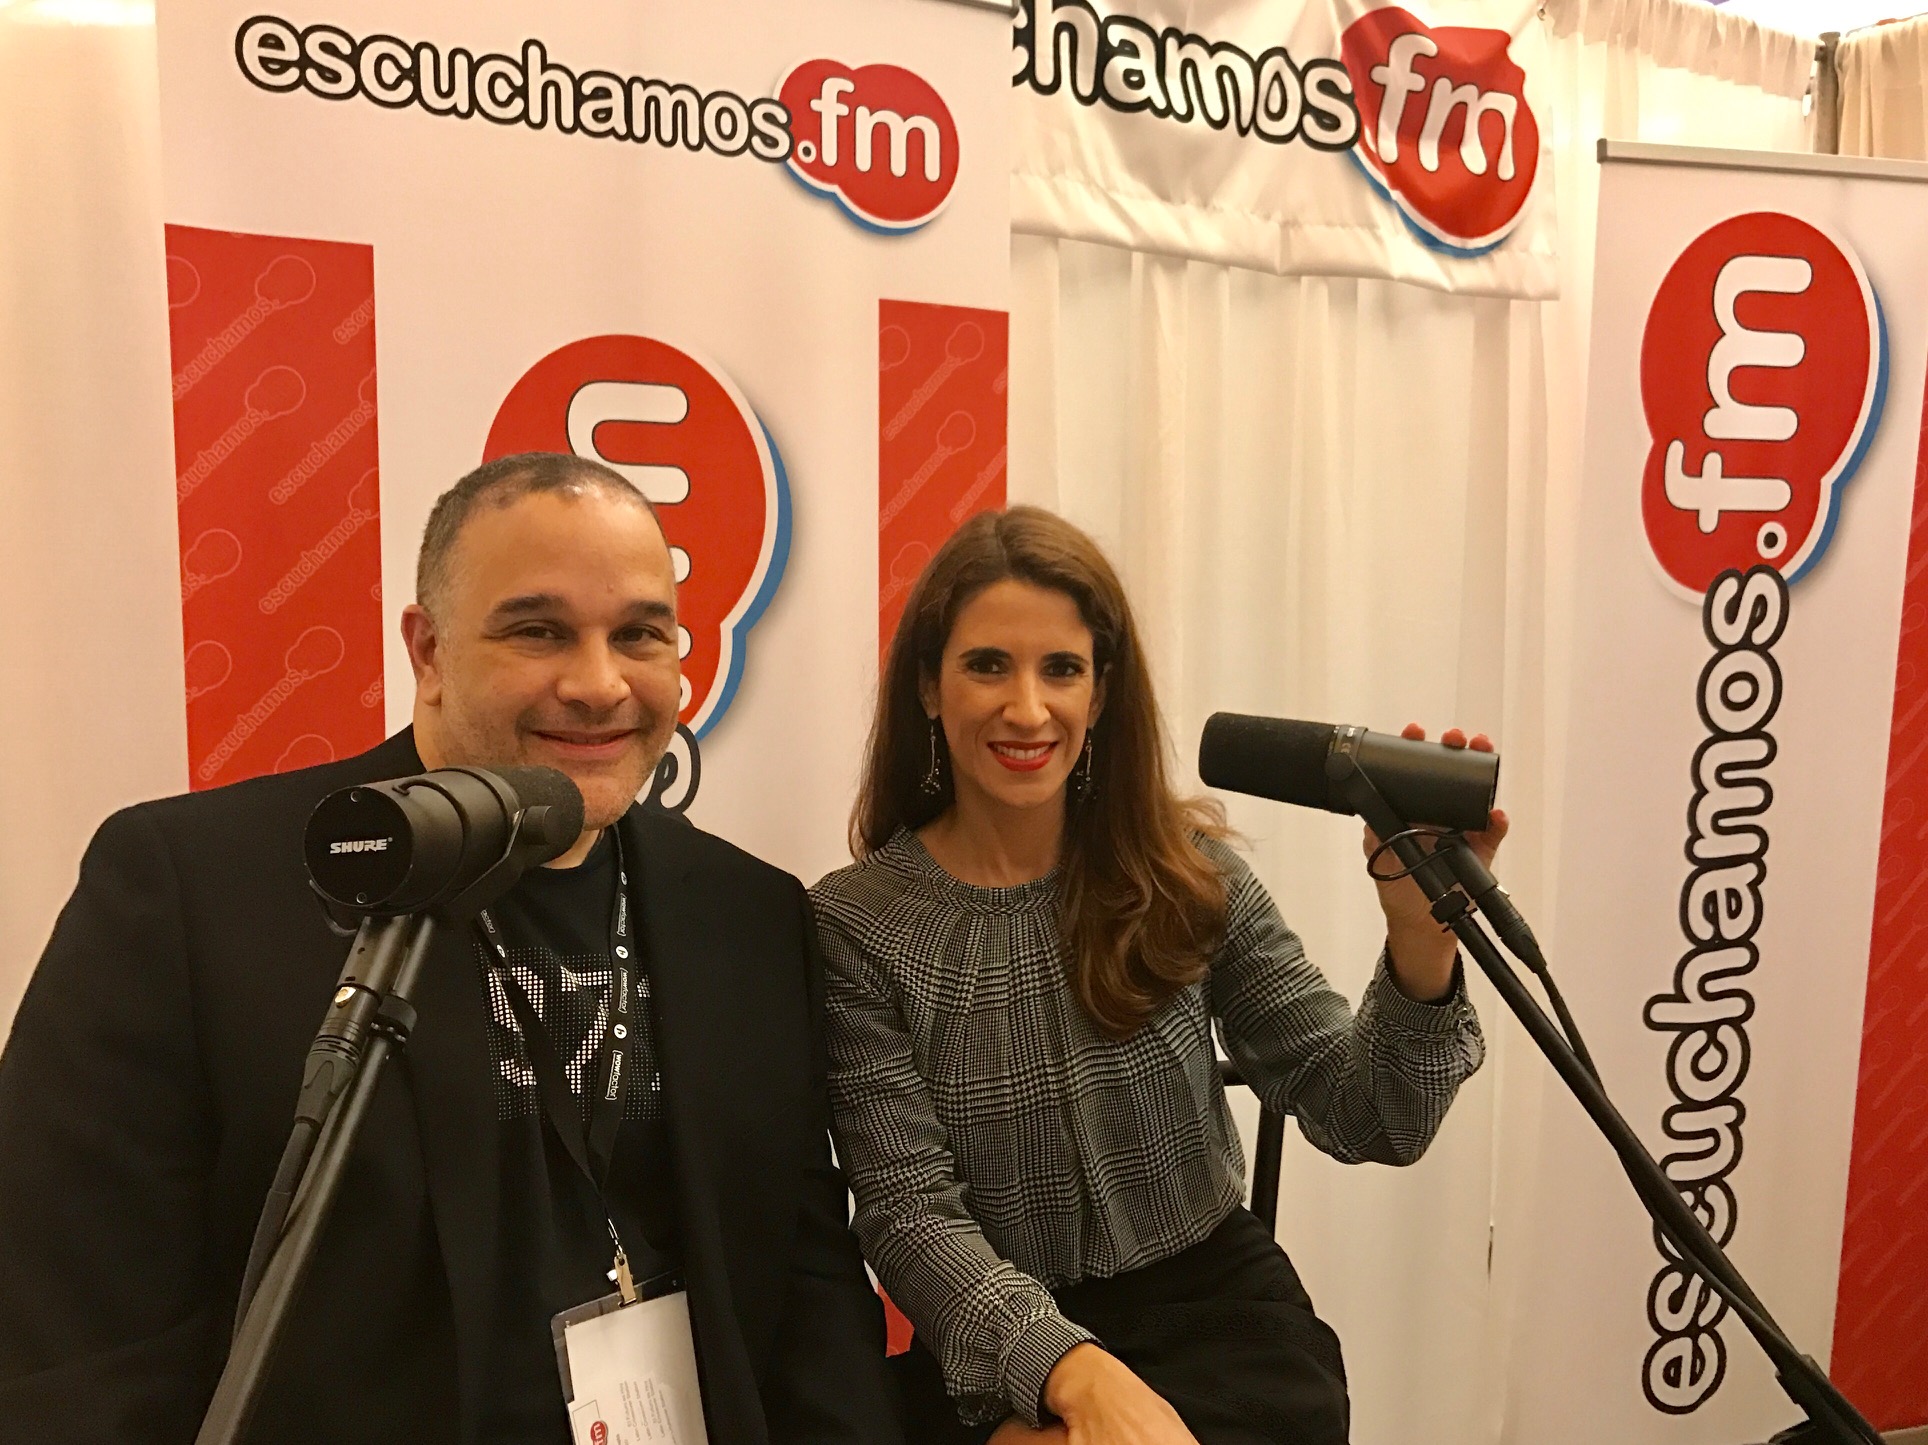 Laura Aiello en la radio Escuchamos FM con Jose Urdaneta